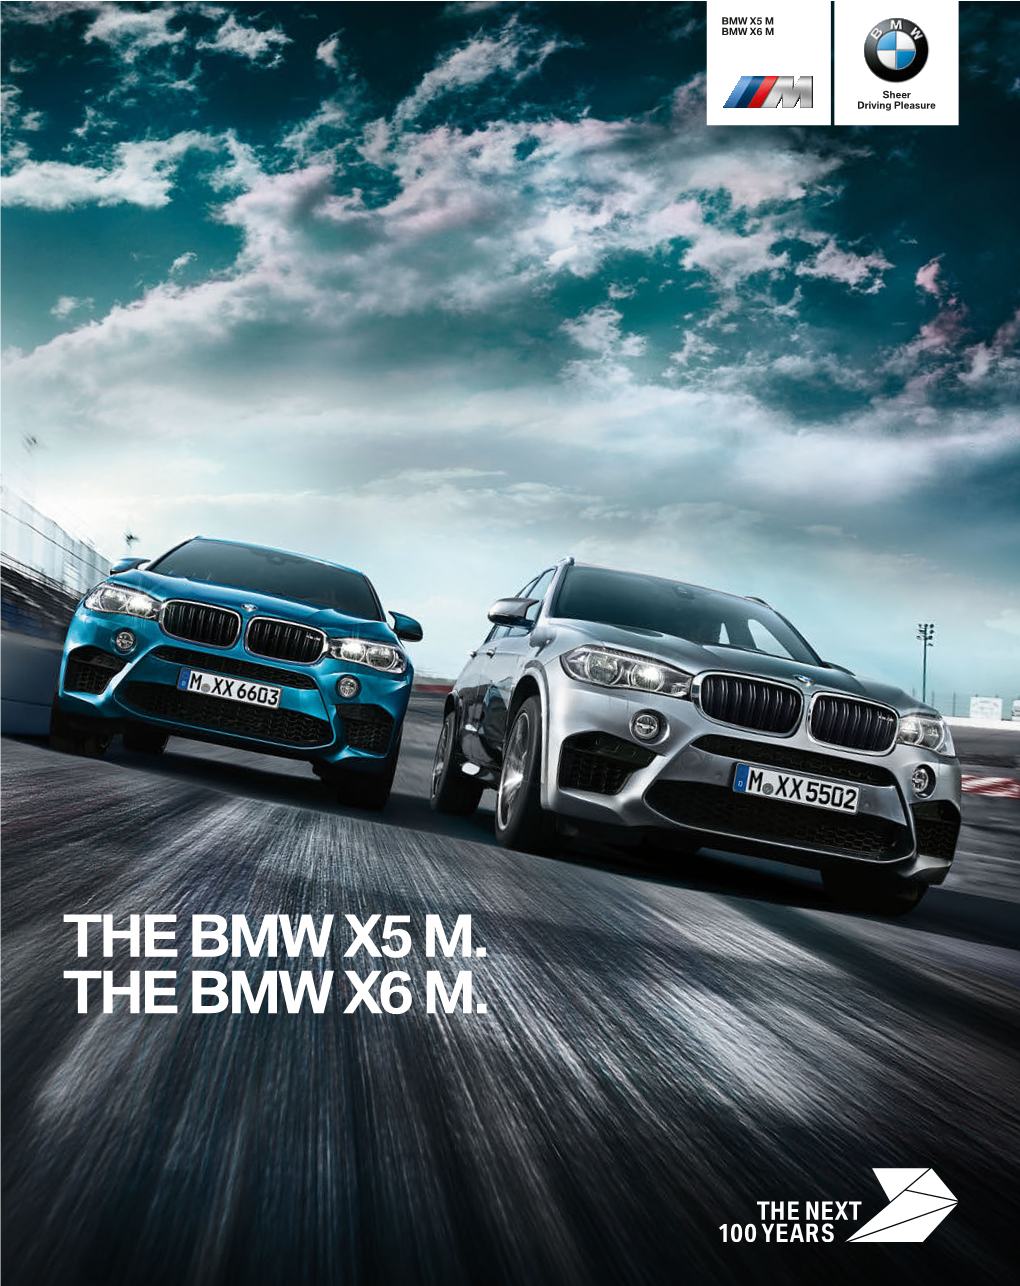 The Bmw X5 M. the Bmw X6 M. the Bmw X5 M